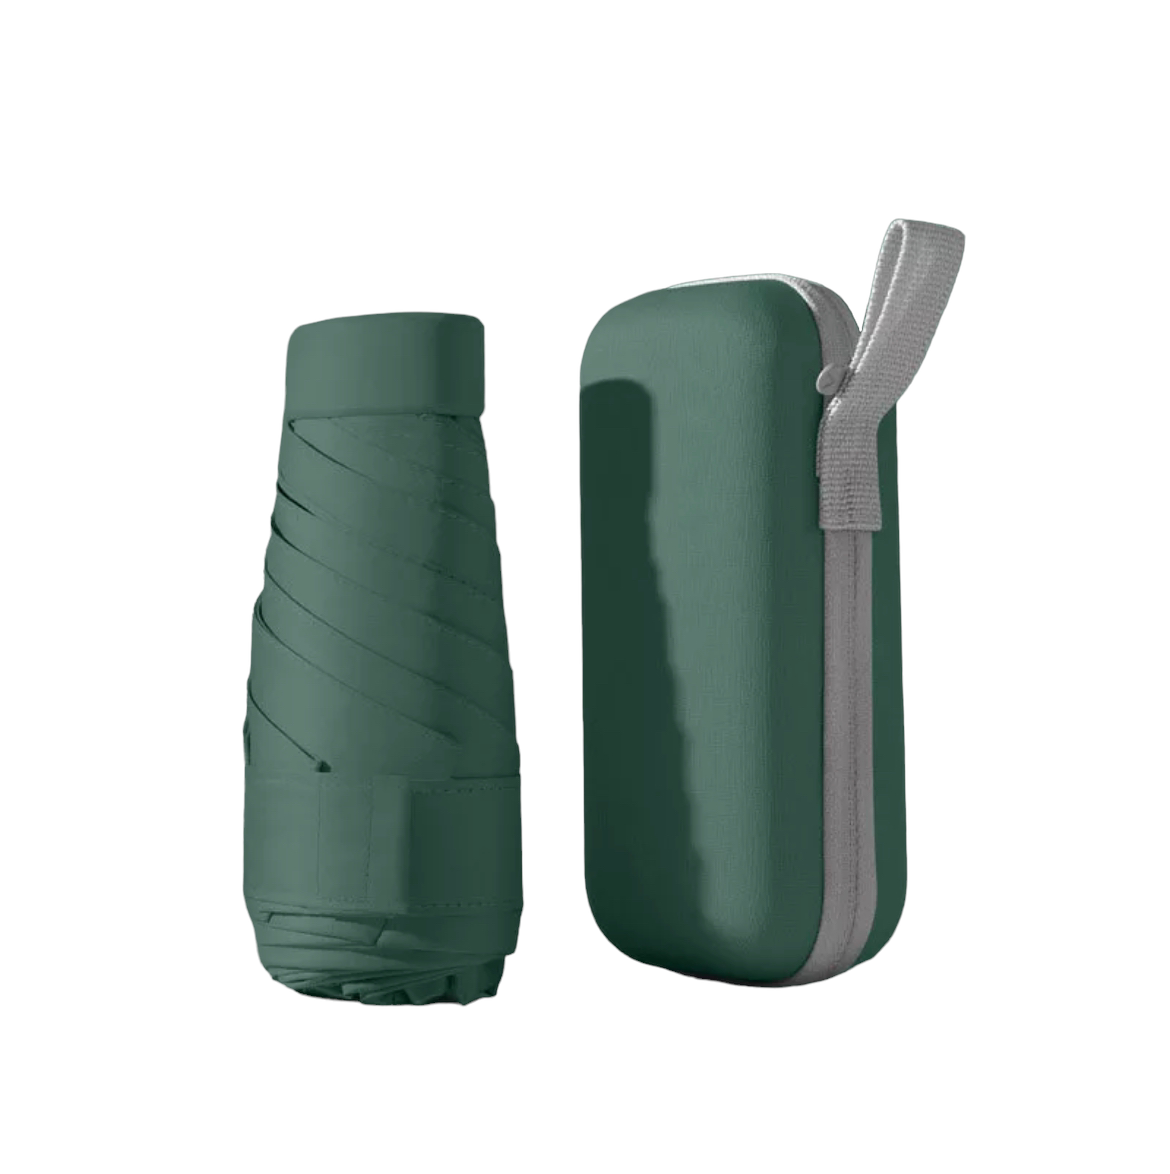 Portable Mini Umbrella with Case Green UV400 Protection